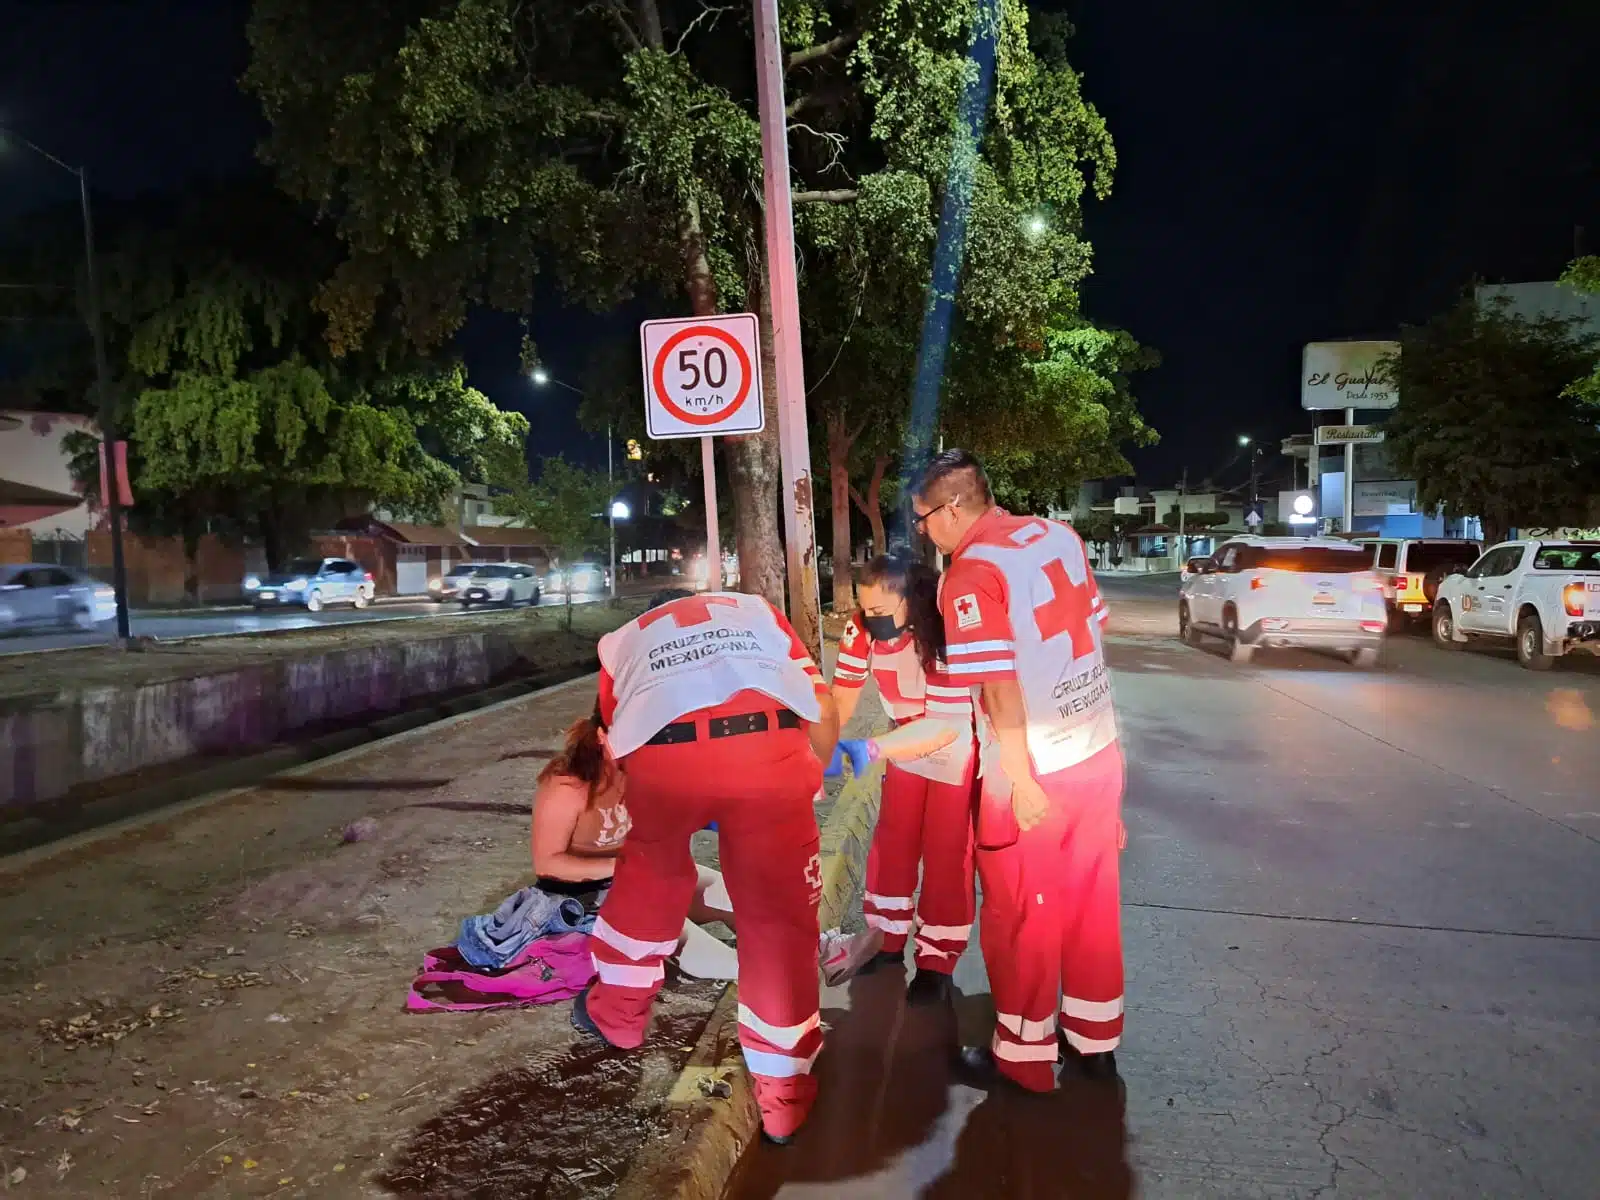 Personal de Cruz Roja auxiliando a la joven atropellada